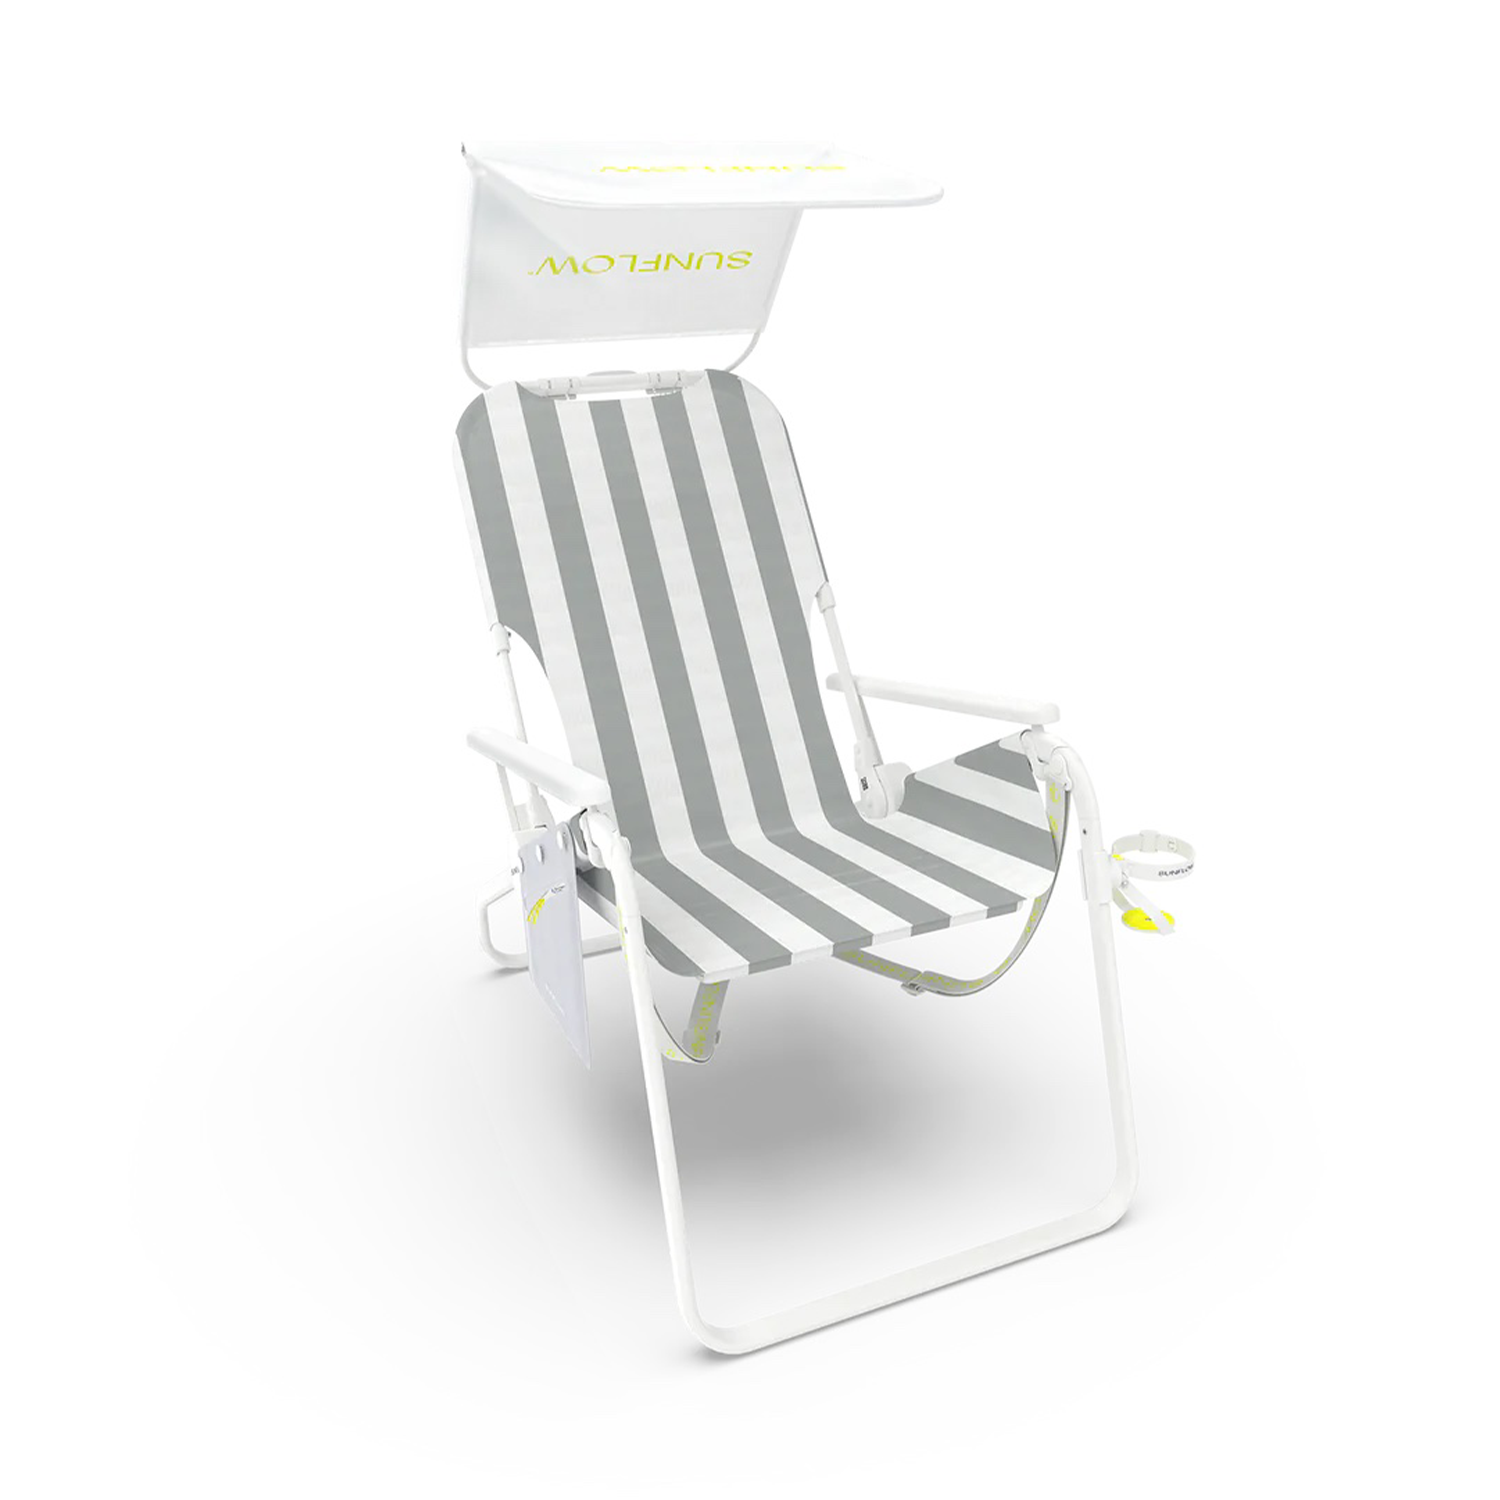 taller sunflow chair